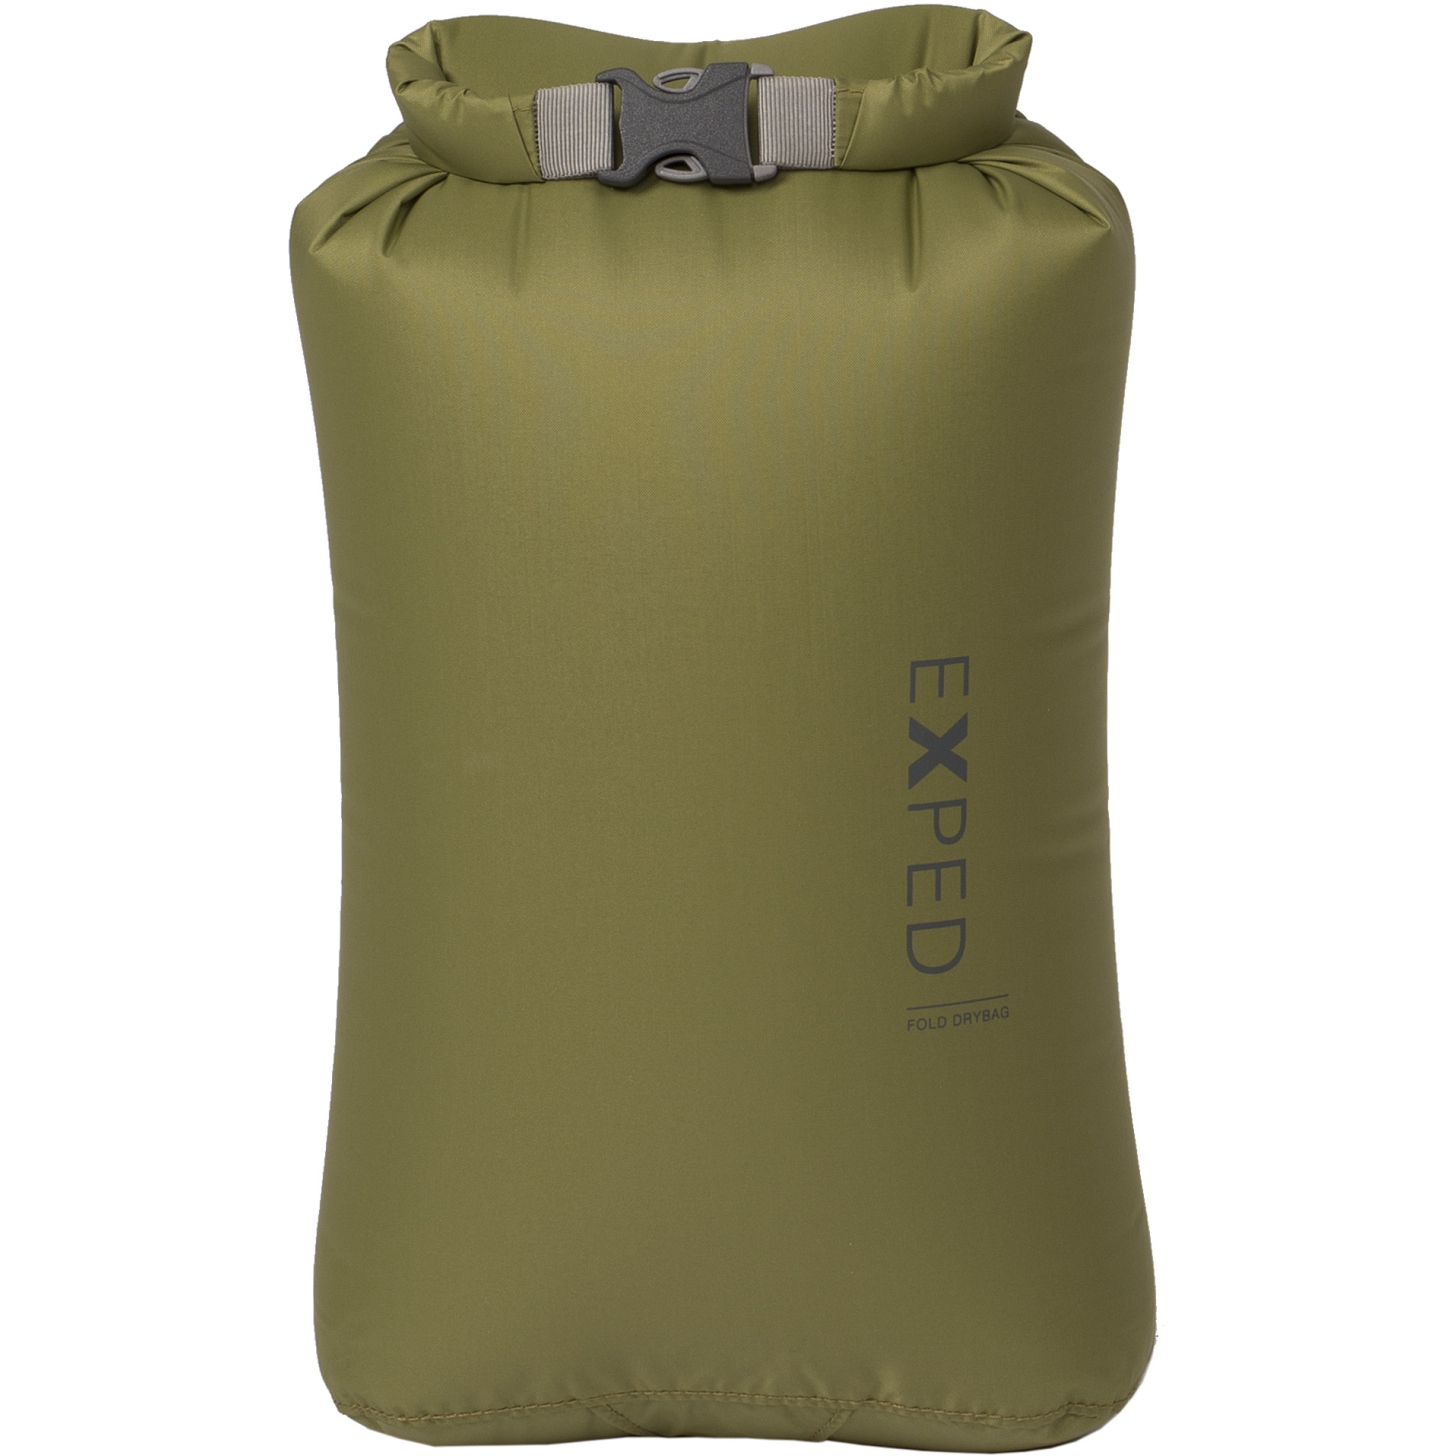 Produktbild von Exped Fold Drybag Packsack - XS - grün